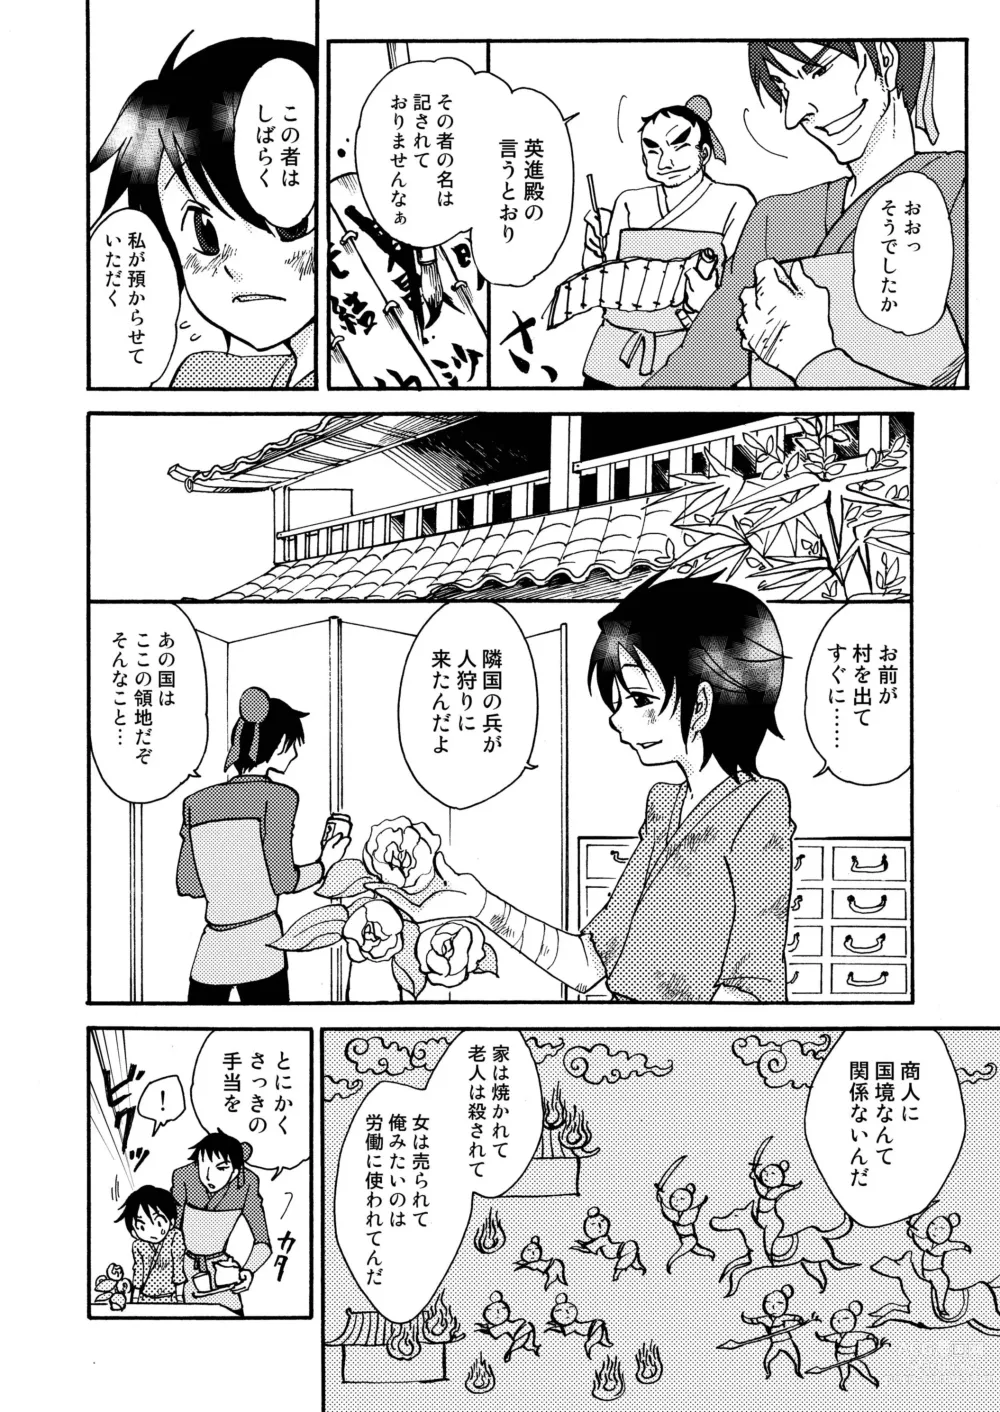 Page 6 of doujinshi Kizu